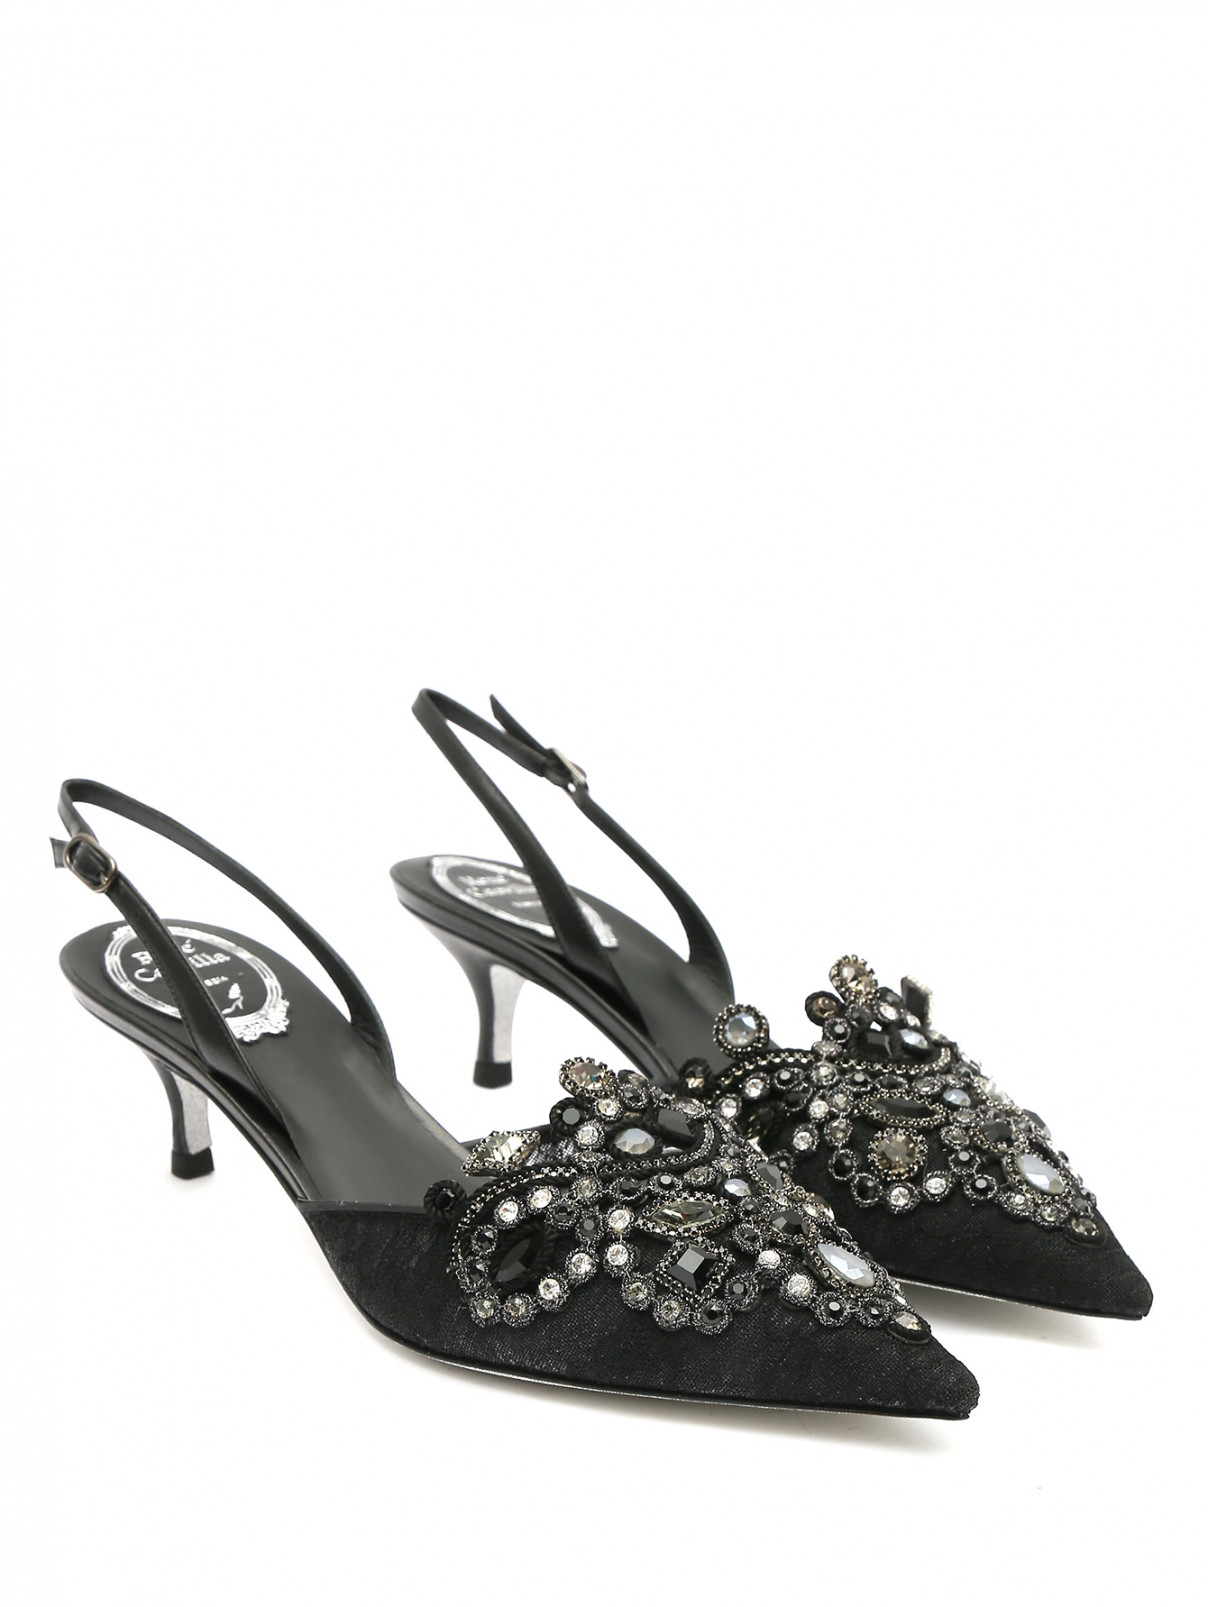 Туфли с открытой пяткой на каблуке-рюмочке с декором Rene Caovilla  –  Общий вид  – Цвет:  Черный